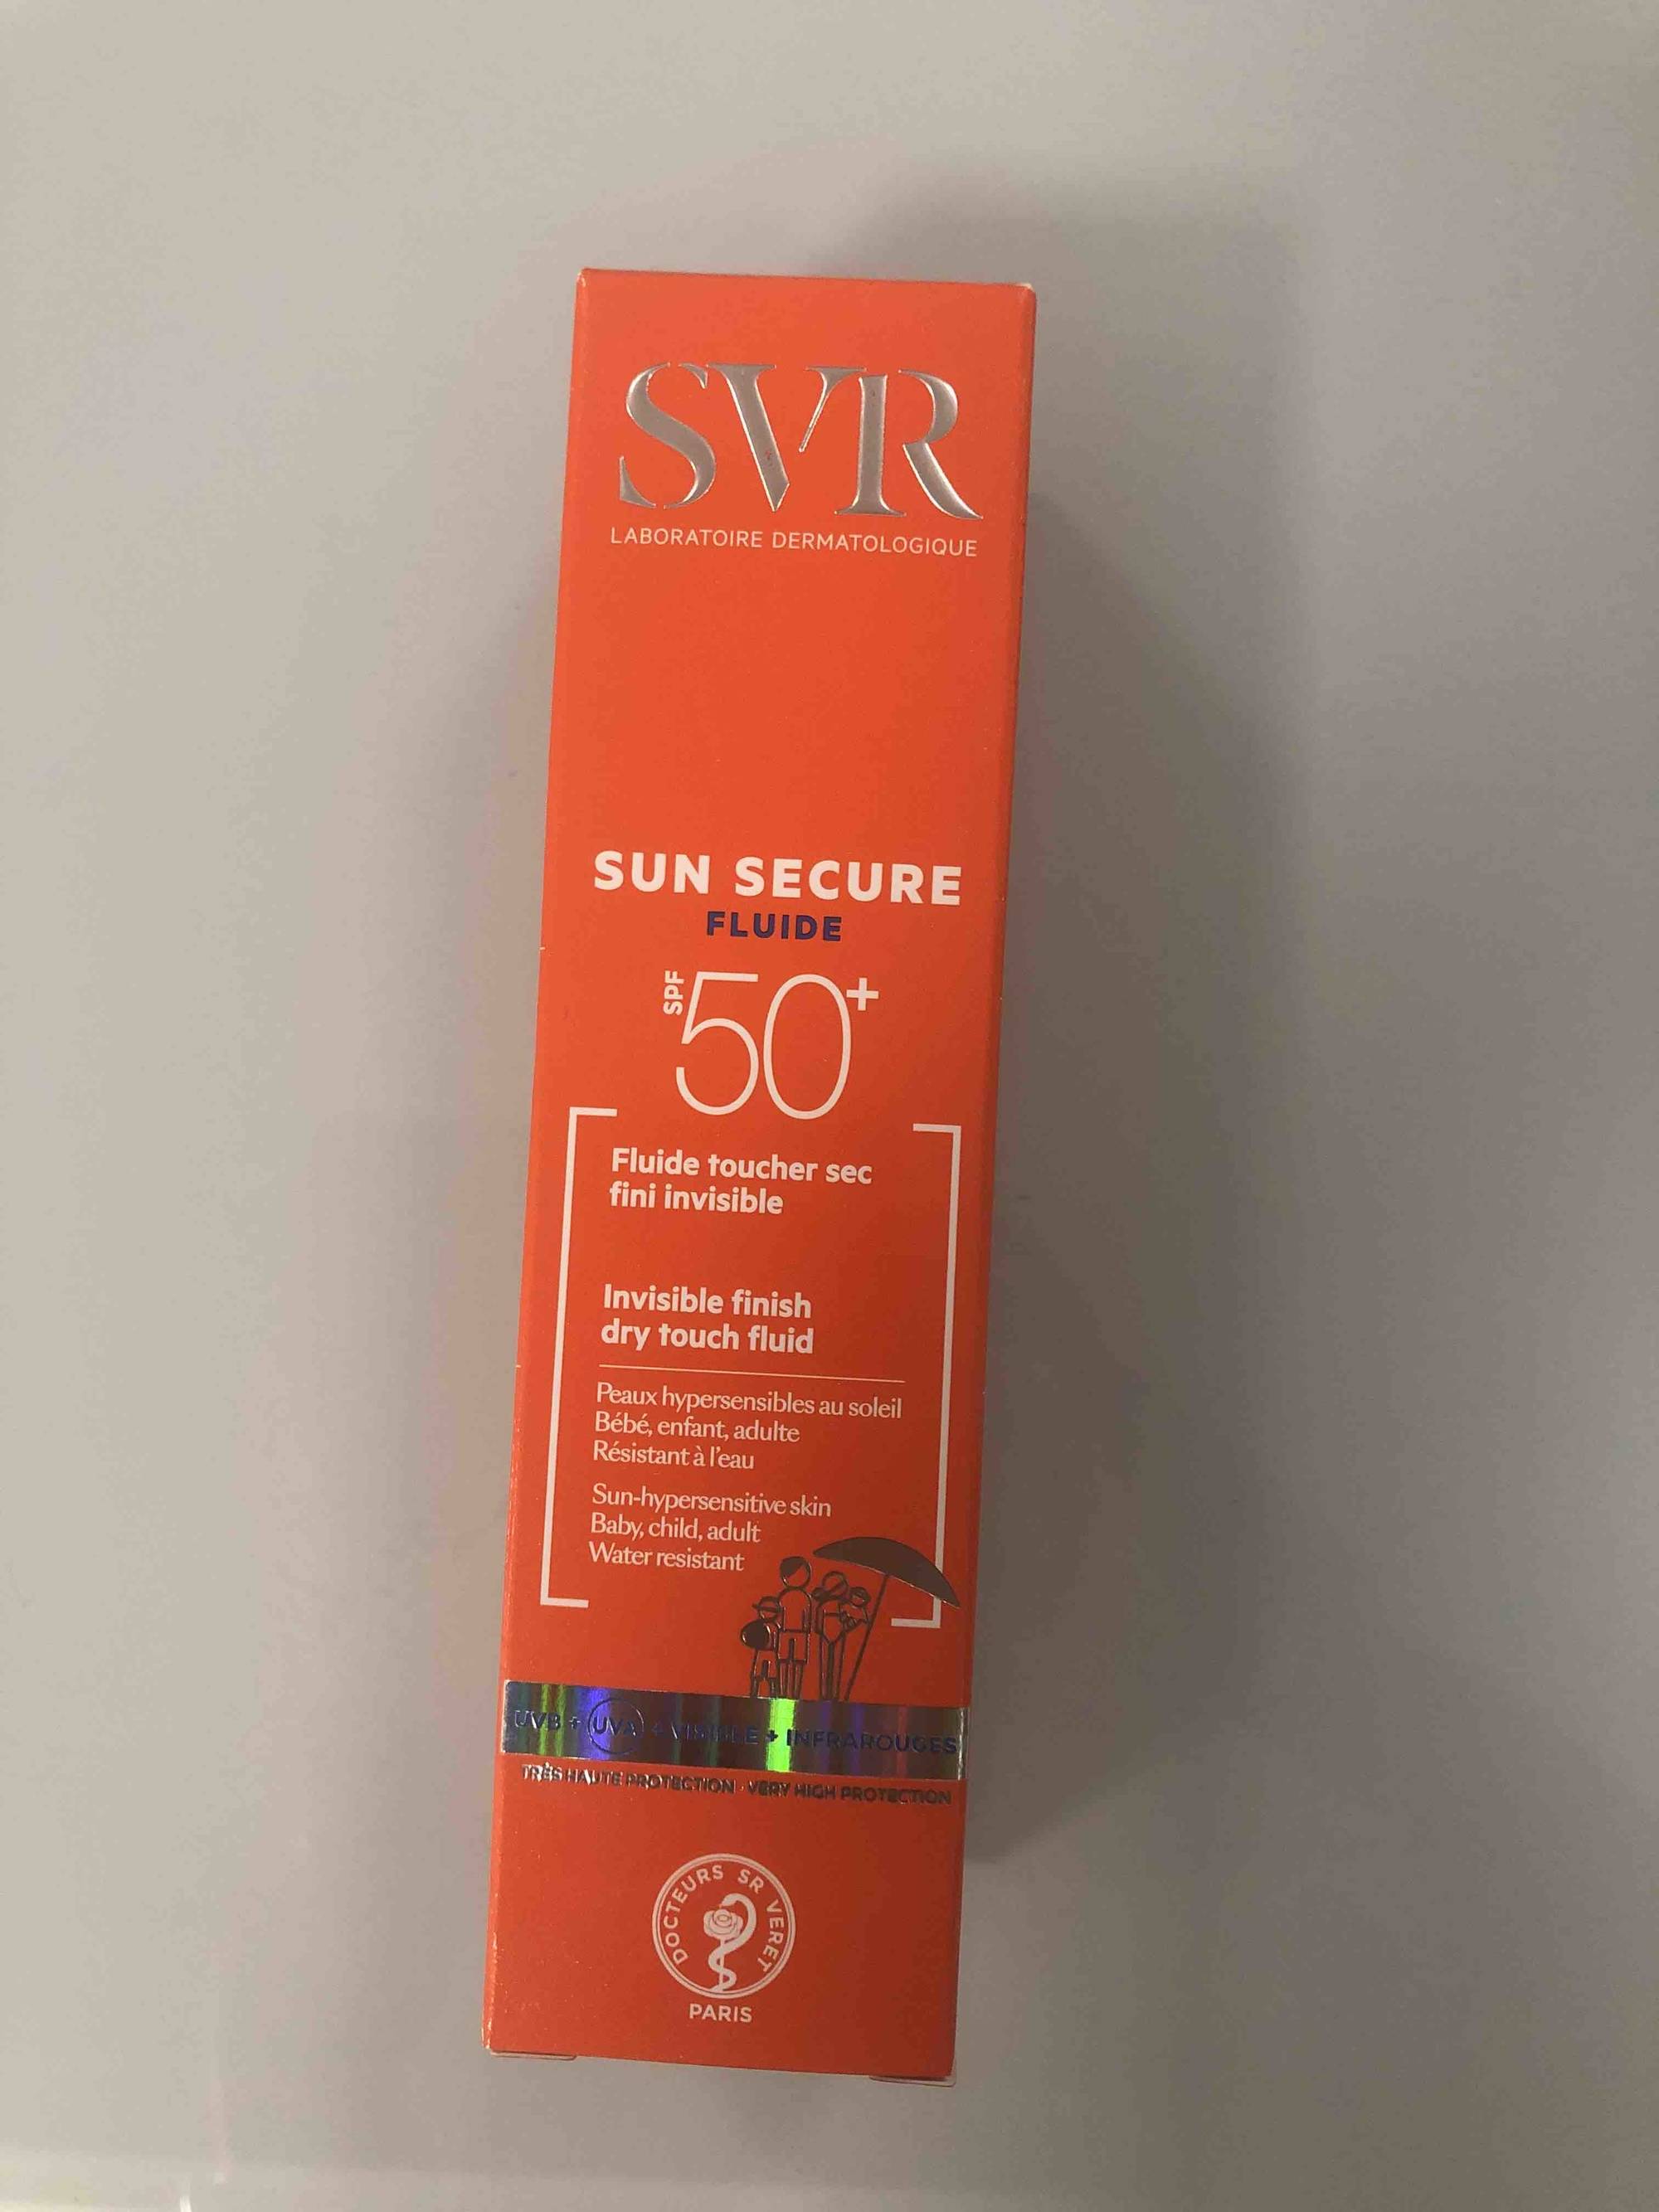 SVR - Sun secure fluide SPF 50+